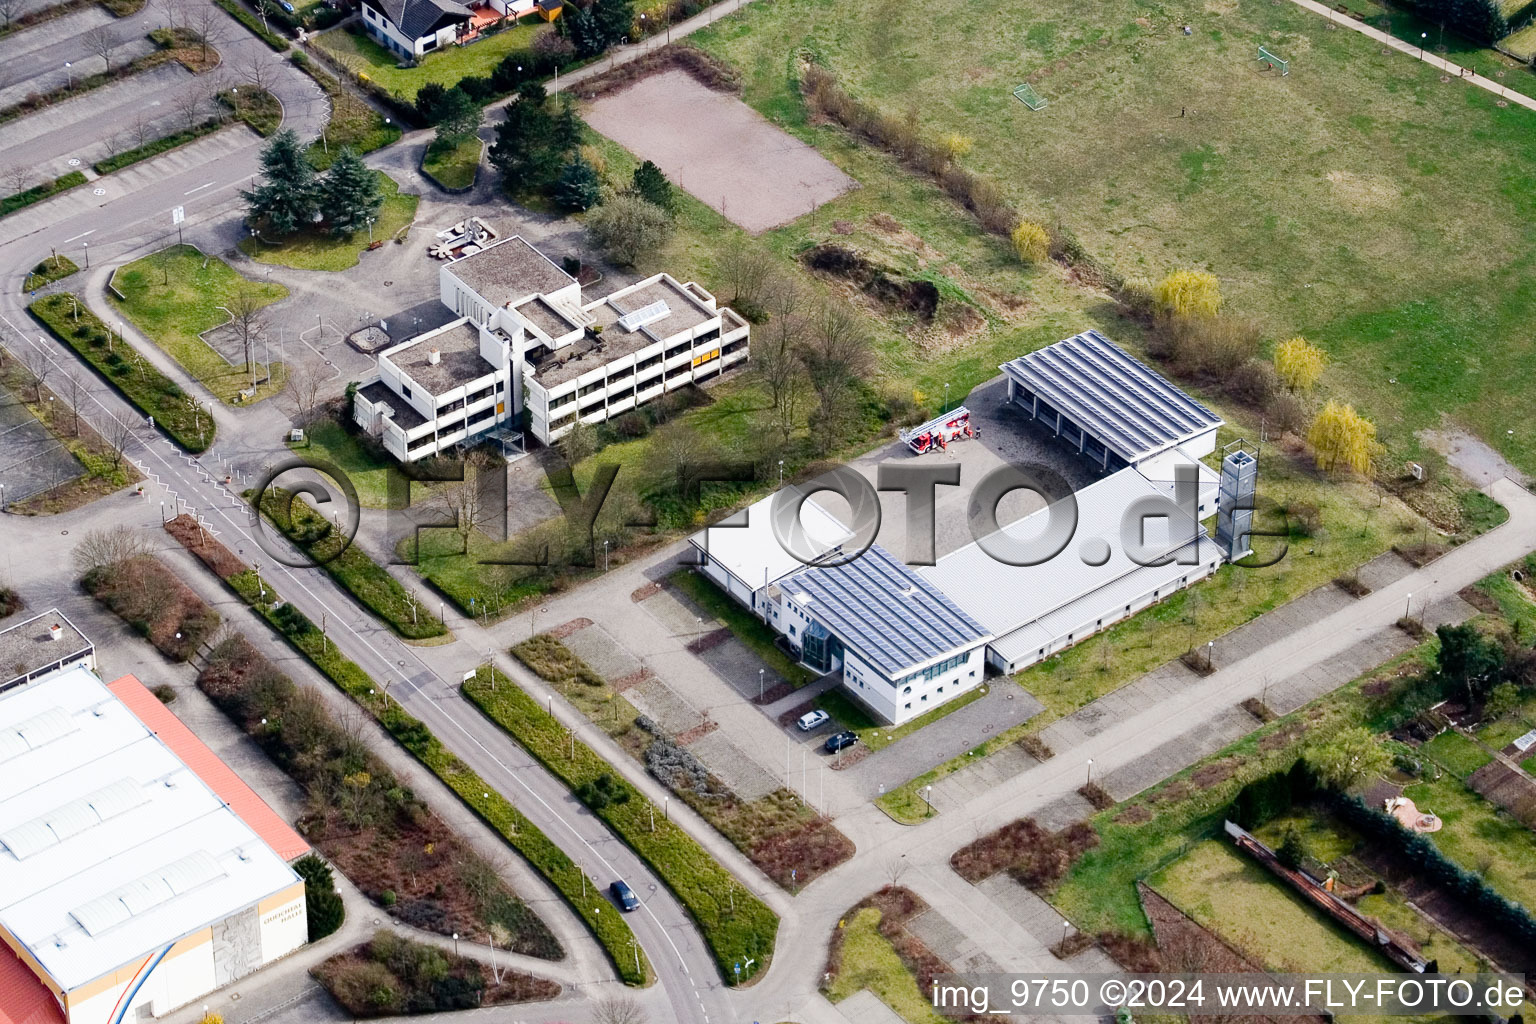 Offenbach an der Queich, Verbandsgemeinde Rathaus im Bundesland Rheinland-Pfalz, Deutschland von oben gesehen